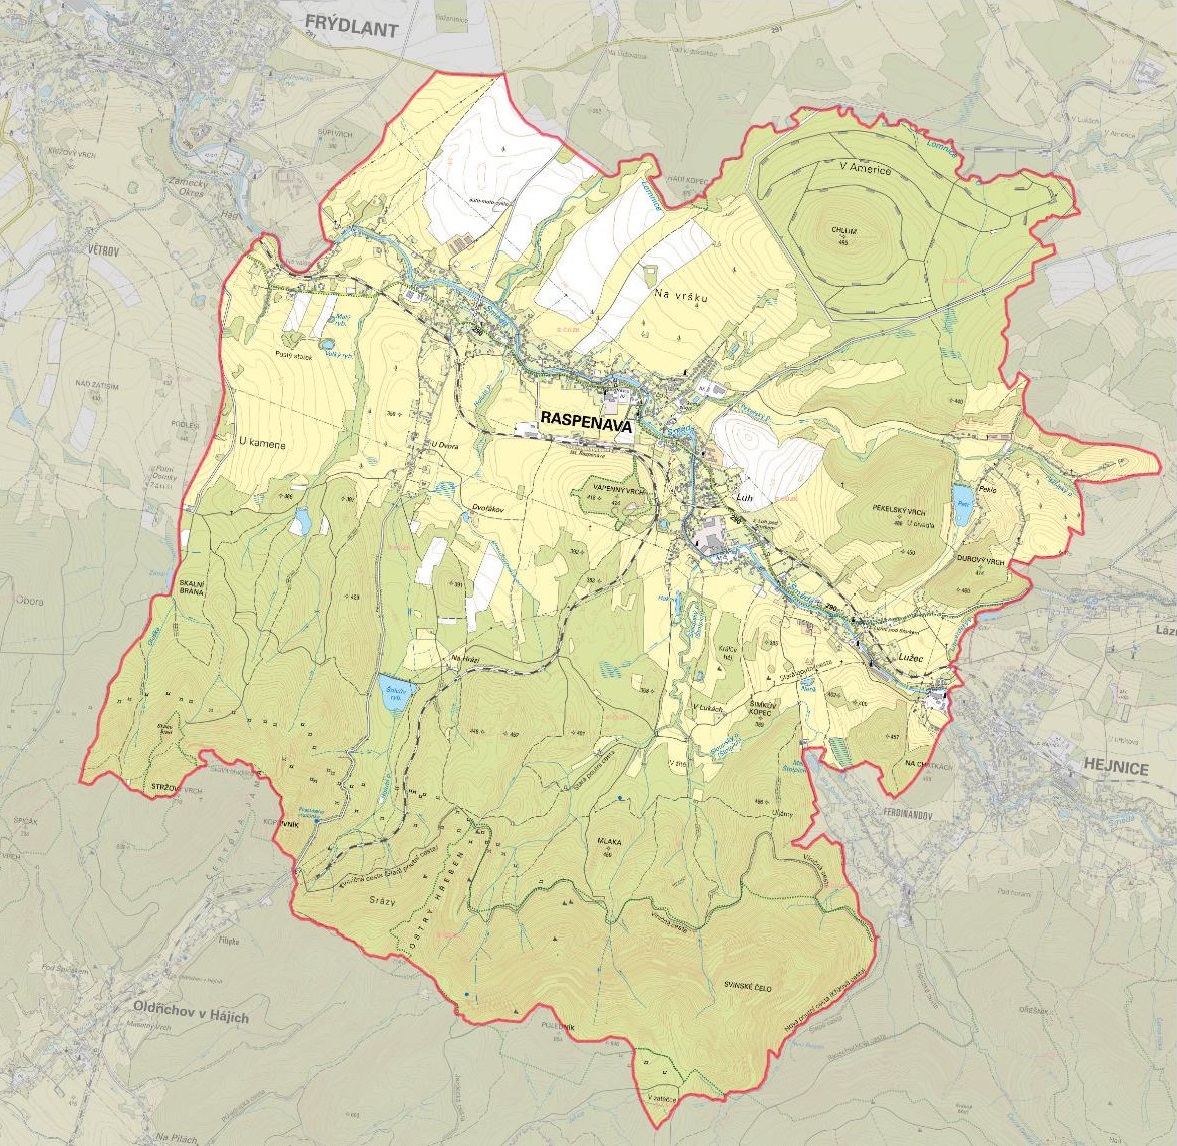 Katastrální území města Raspenava